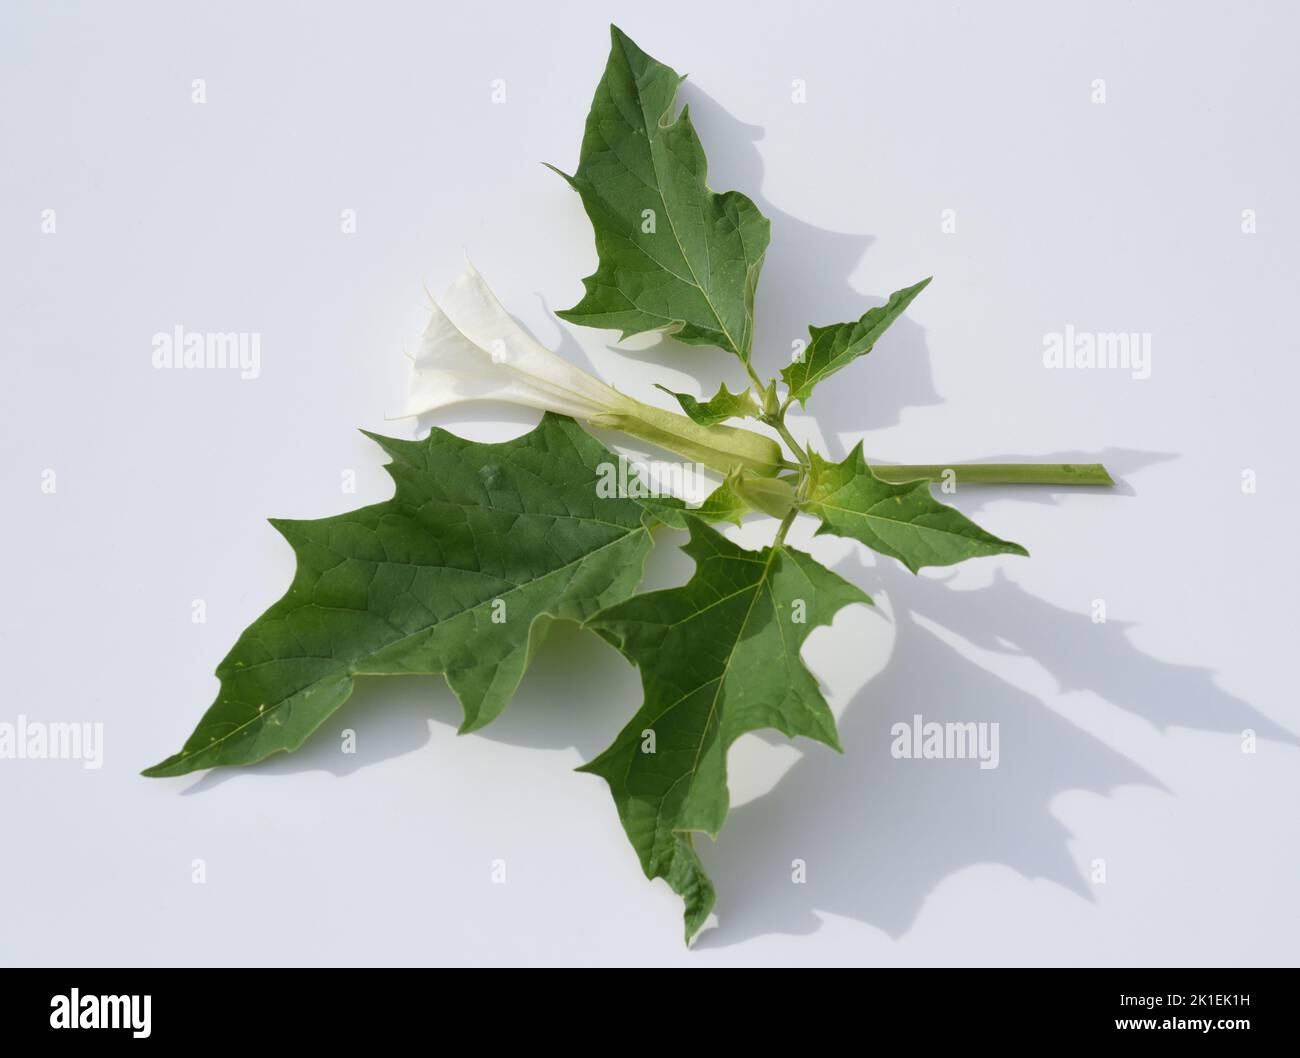 La mela di Thorn, Datura Stramonium è una pianta medicinale che è usata anche in medicina. Foto Stock